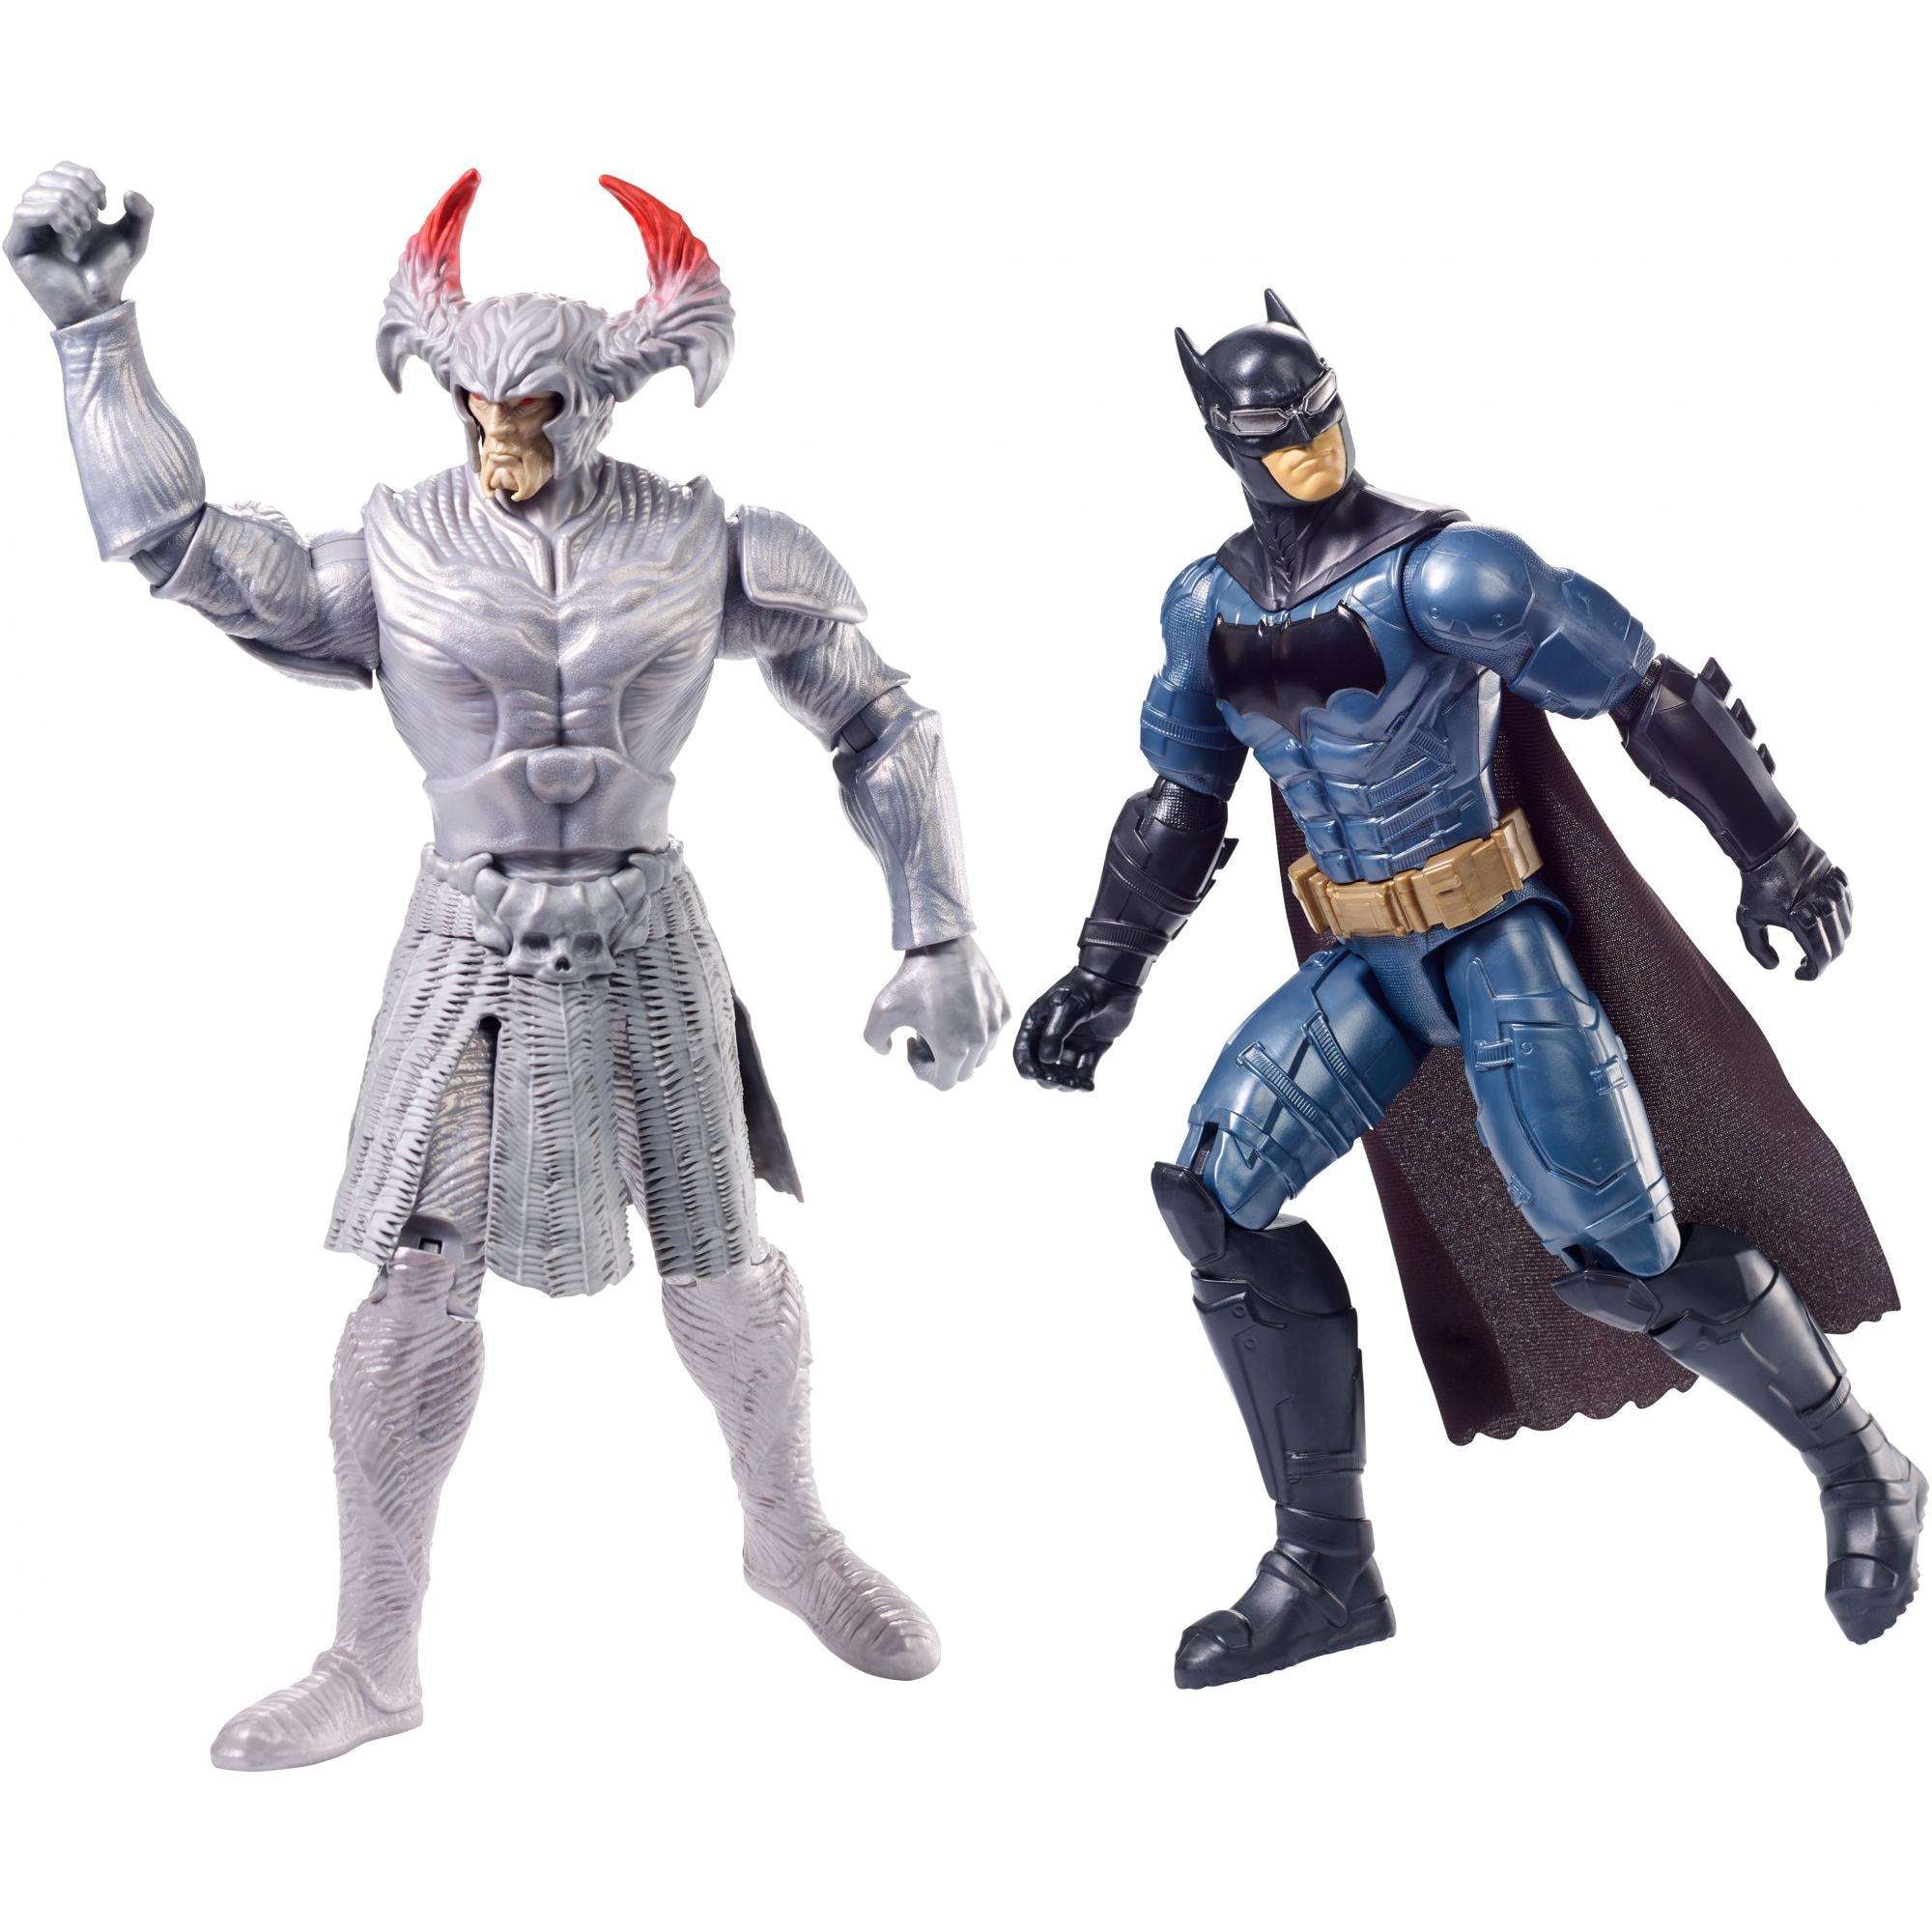 Mattel 2017 DC Comics Multiverse Justice League Batman Steppenwolf BAF for sale online 